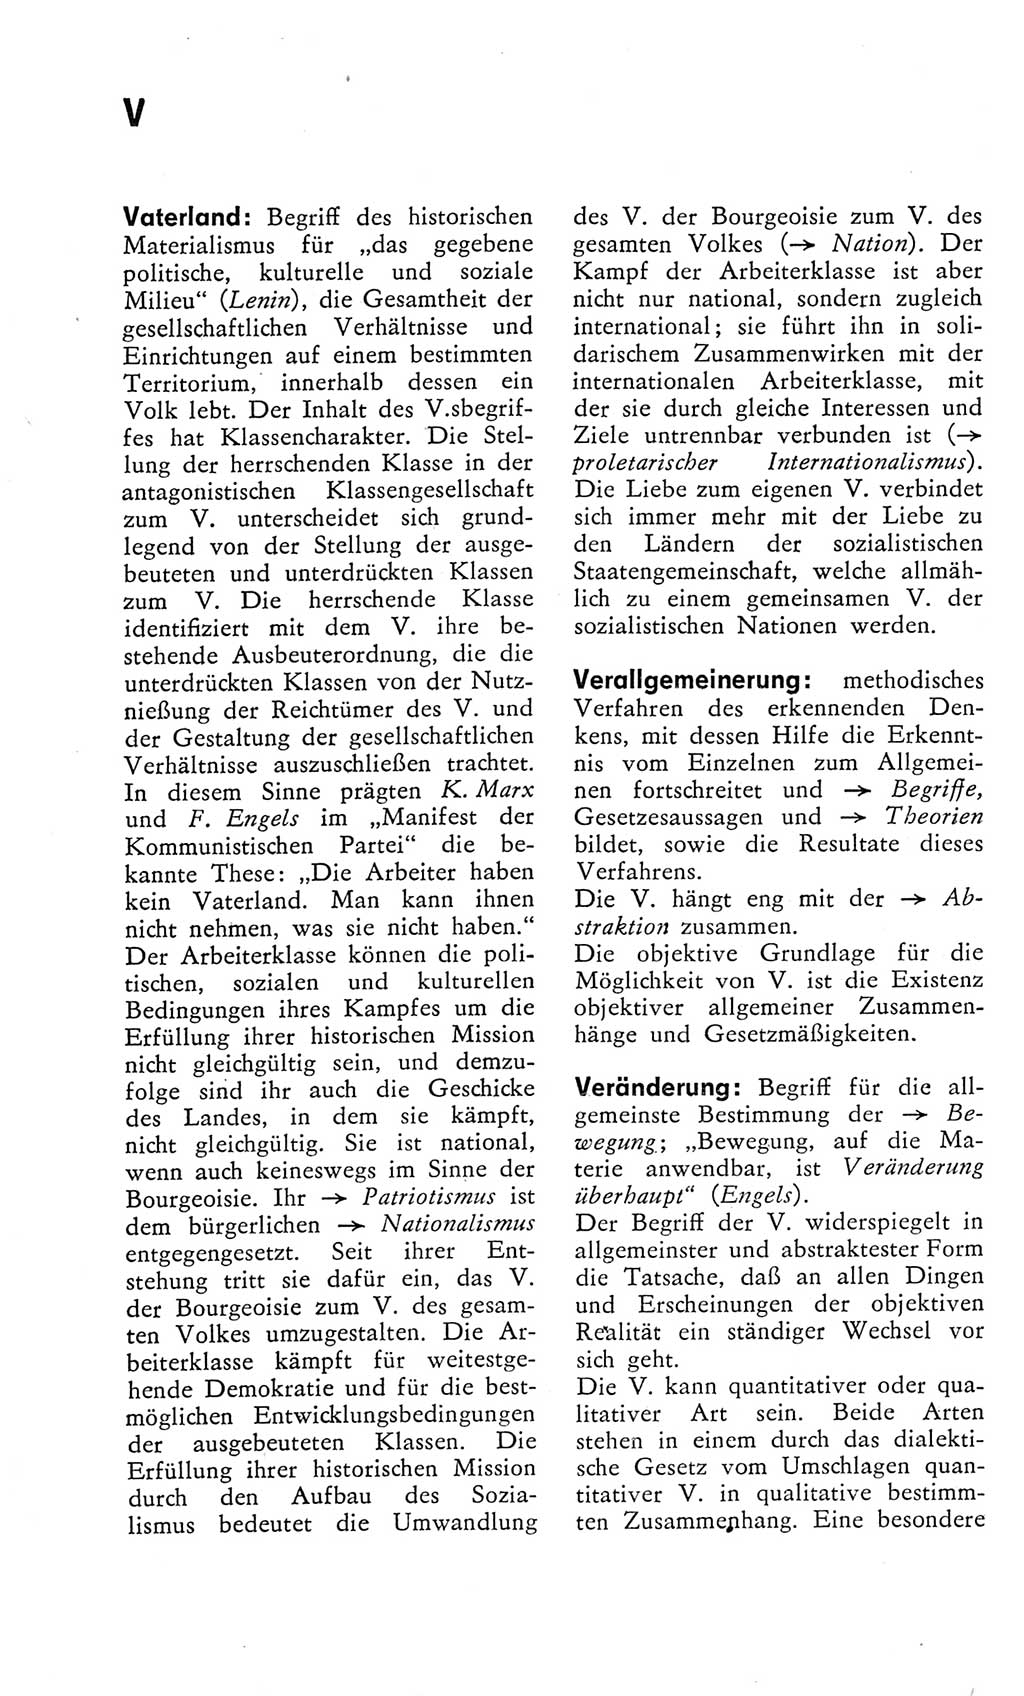 Kleines Wörterbuch der marxistisch-leninistischen Philosophie [Deutsche Demokratische Republik (DDR)] 1975, Seite 288 (Kl. Wb. ML Phil. DDR 1975, S. 288)